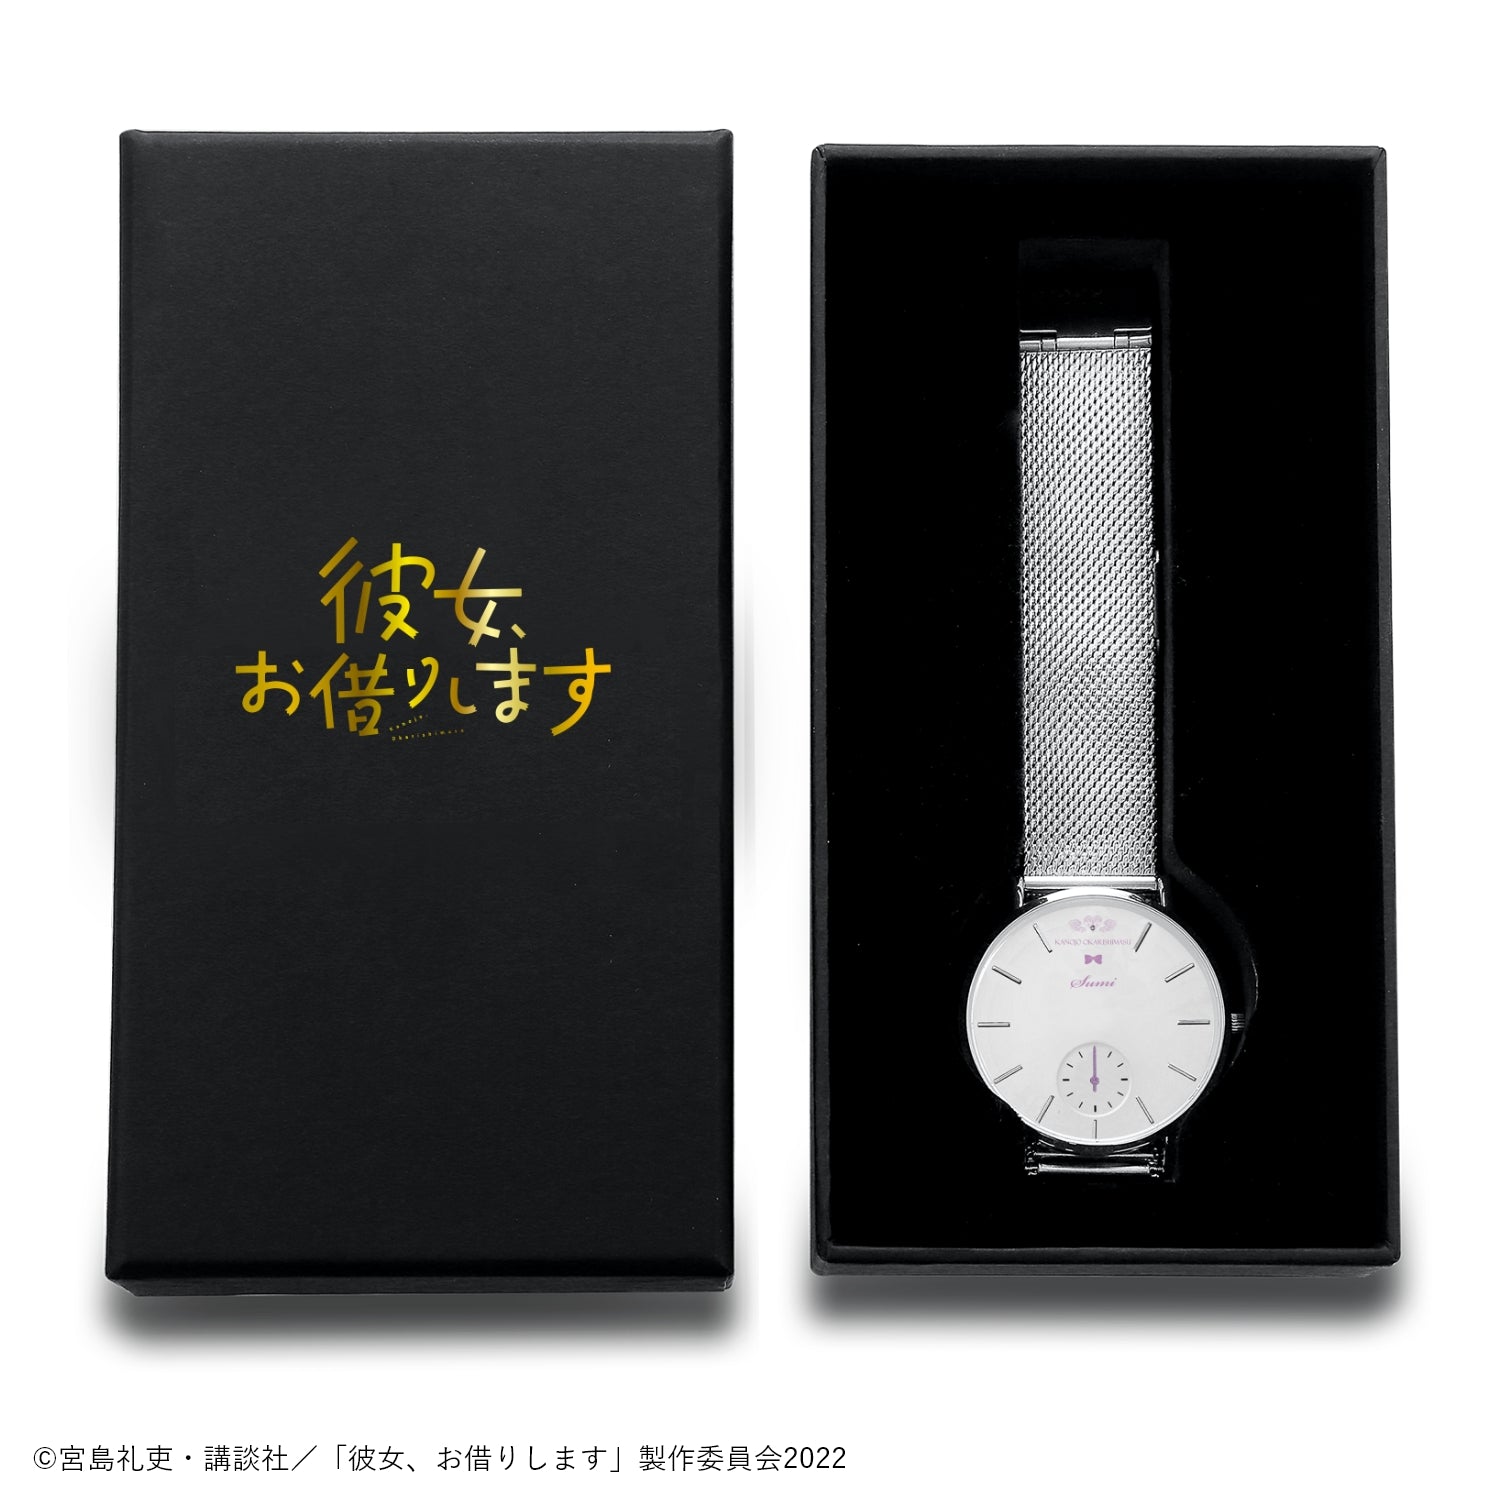 アニメ「彼女、お借りします」薄型スモールセコンド腕時計 | 桜沢墨 - 公式通販サイト「アニメコレクション/Anime Collection」